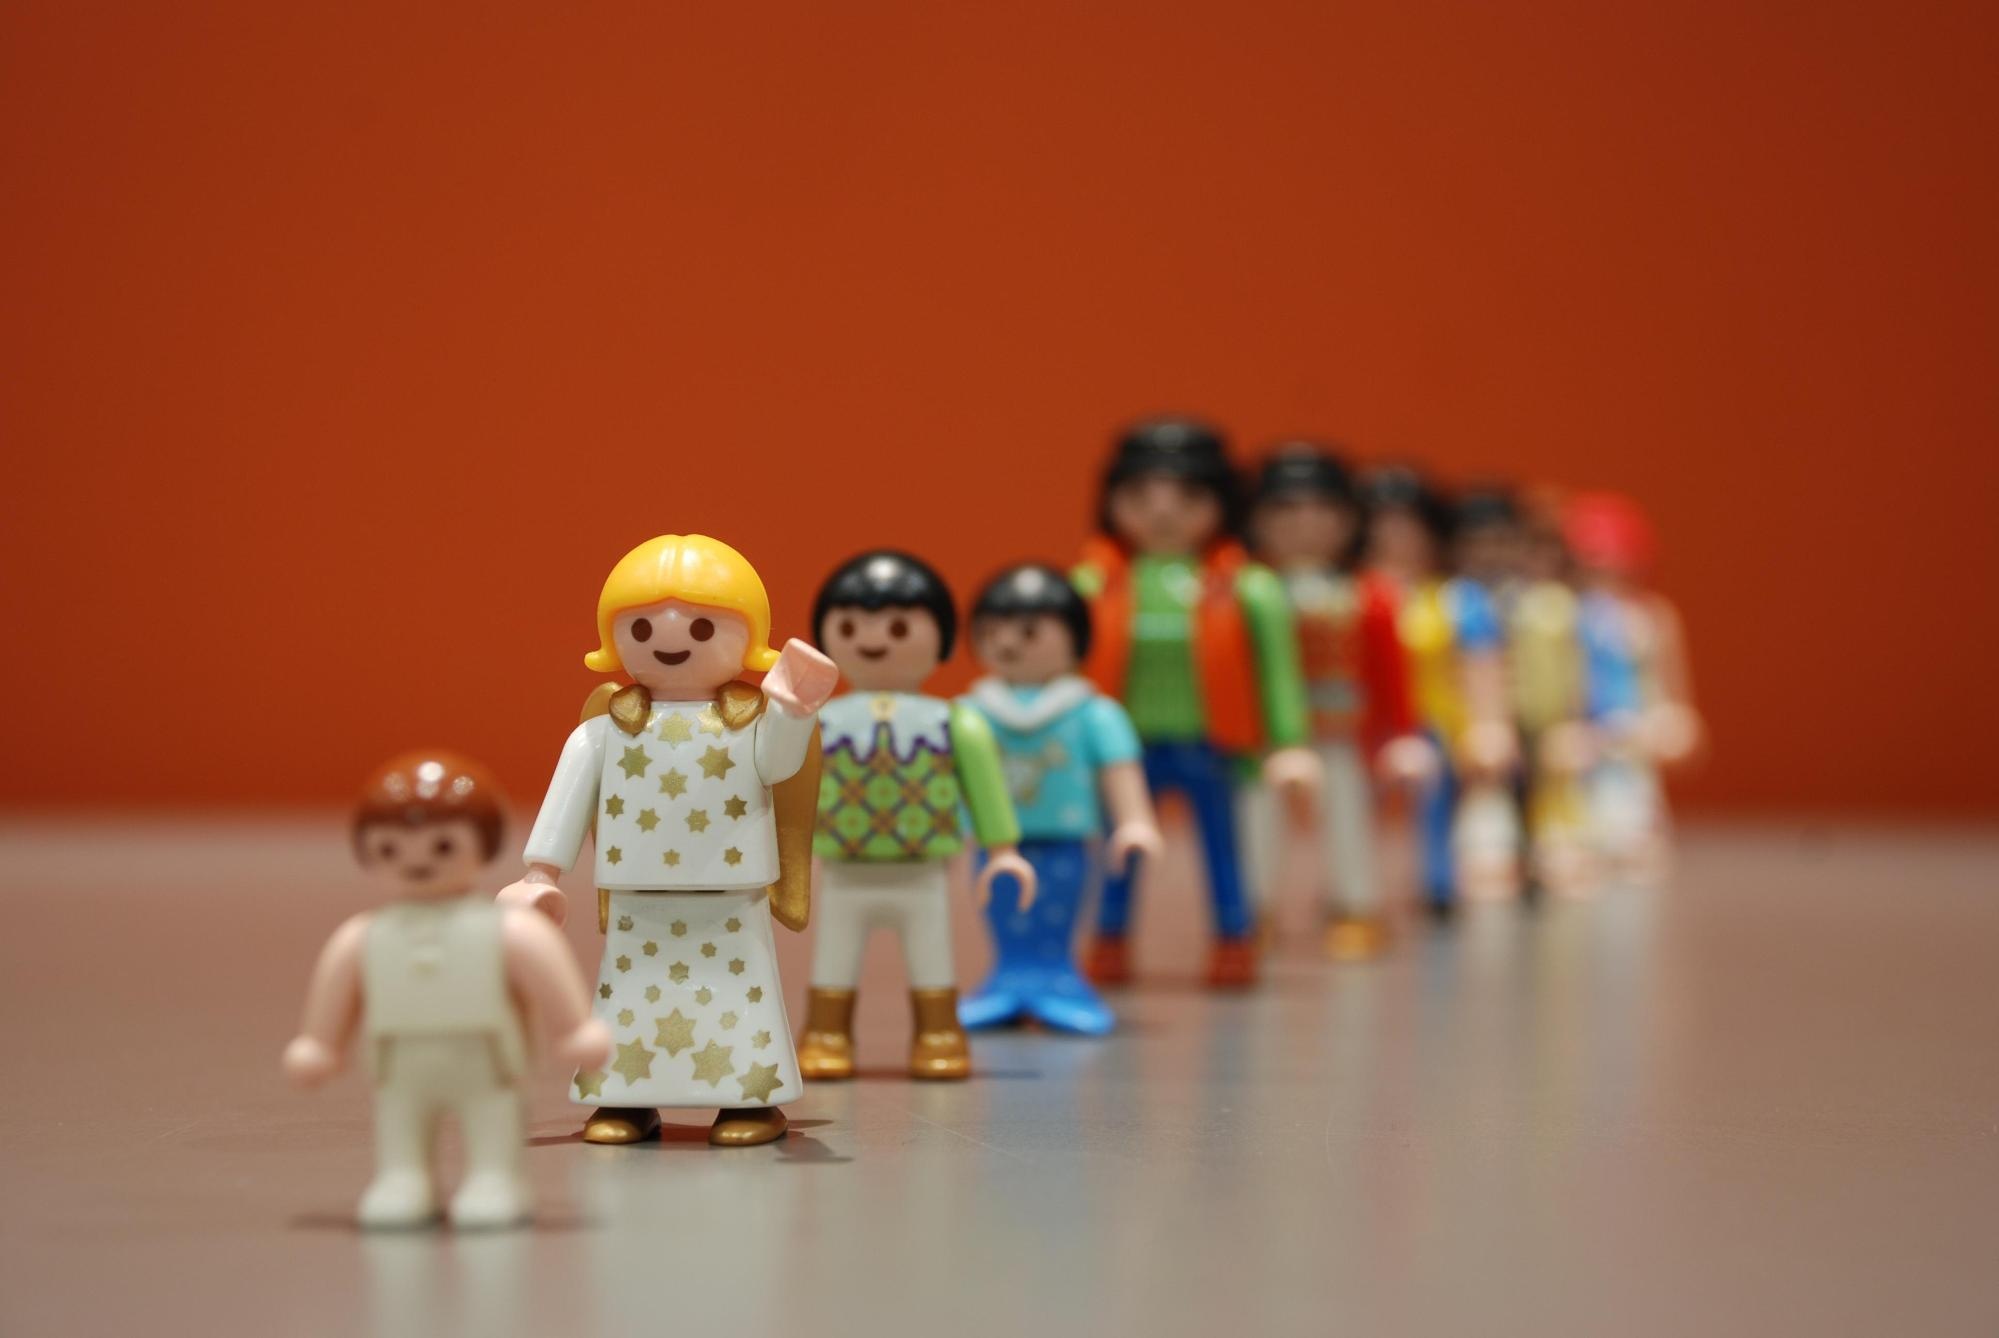 Männliche und weibliche Playmobilfiguren unterschiedlichen Alters stehen versetzt in einer Reihe. Durch den Fokus ist nur ein junges Mädchen erkennbar. Der Rest ist unscharf. © Pixaby